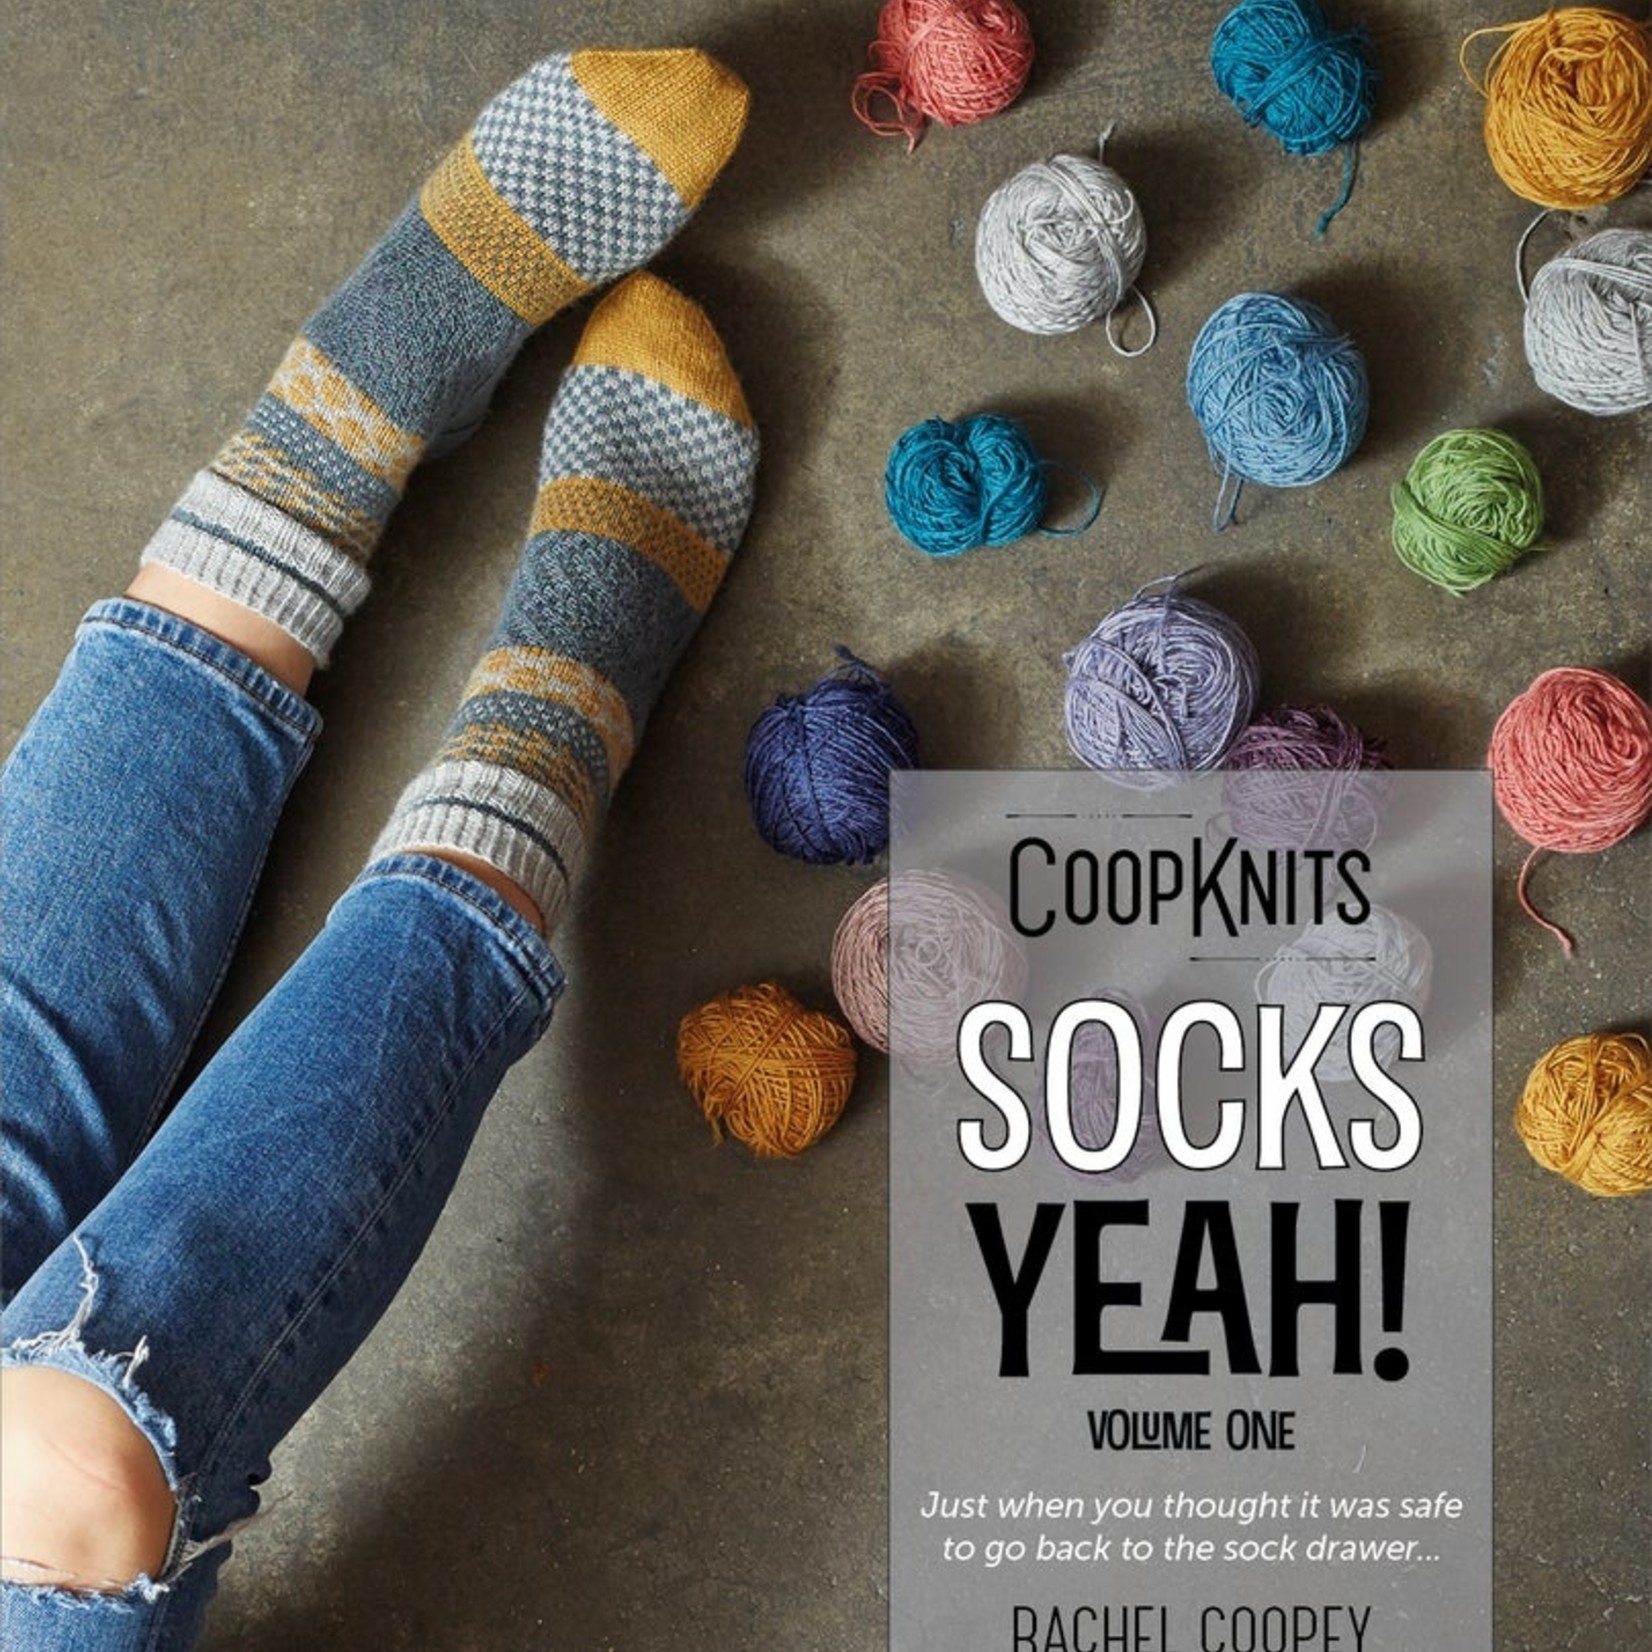 Socks Yeah! - Vol.1 - Coop Knits / Rachel Coopey